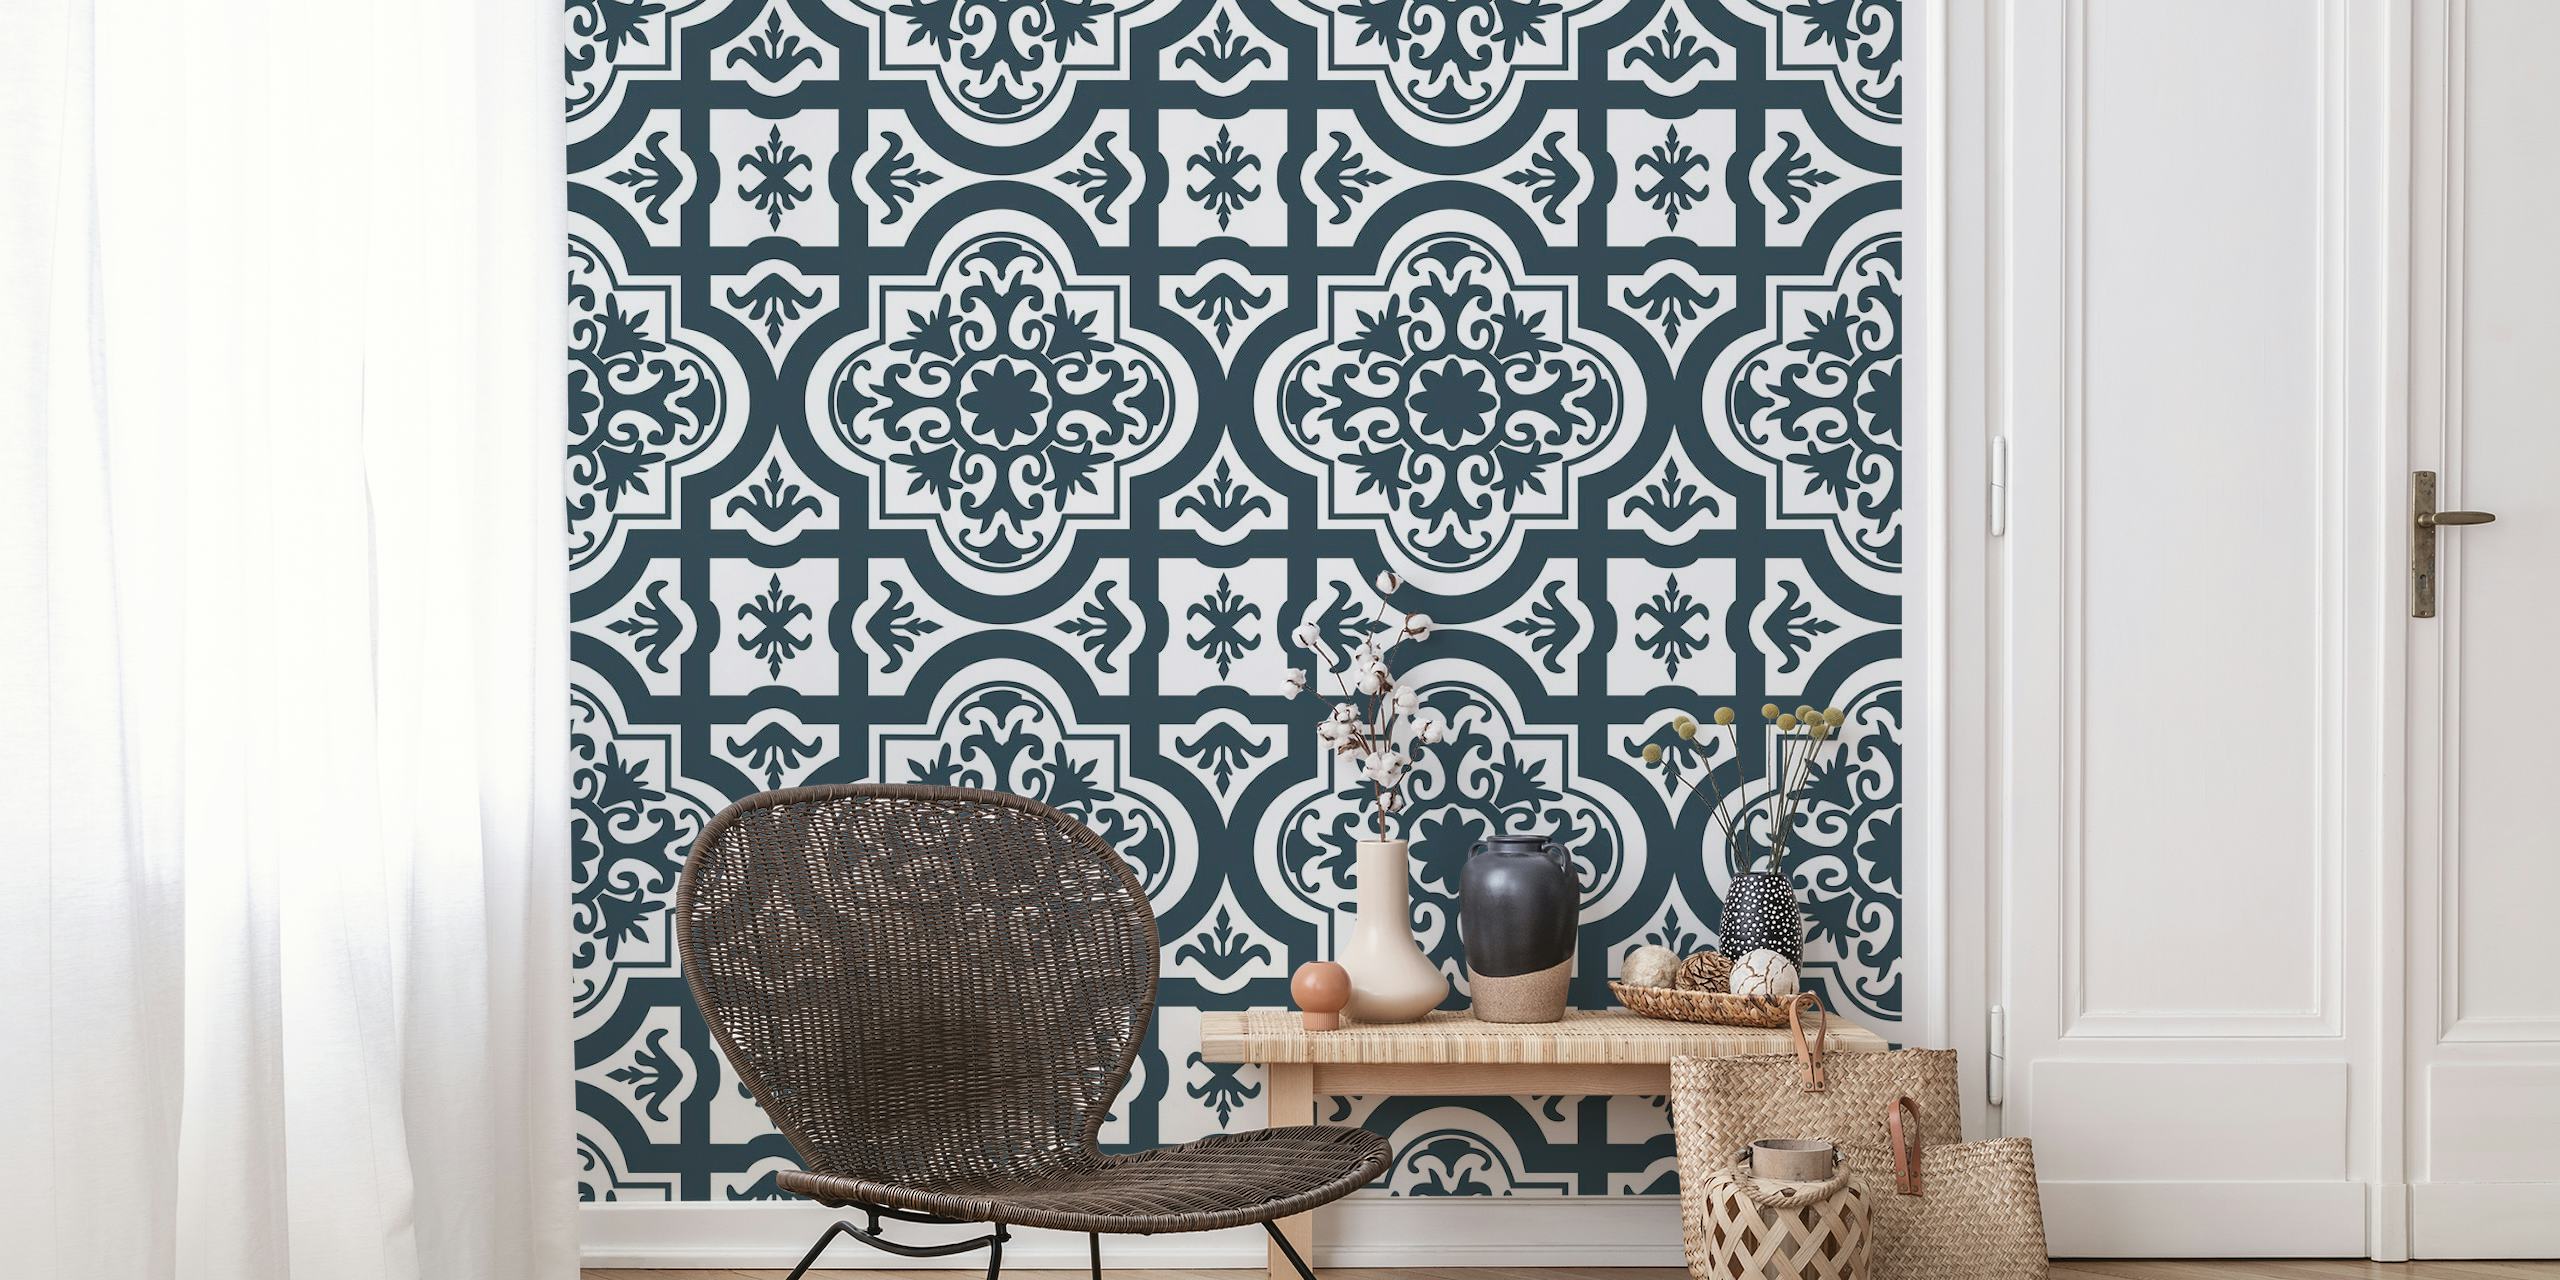 Moroccan monochrome ornament wallpaper